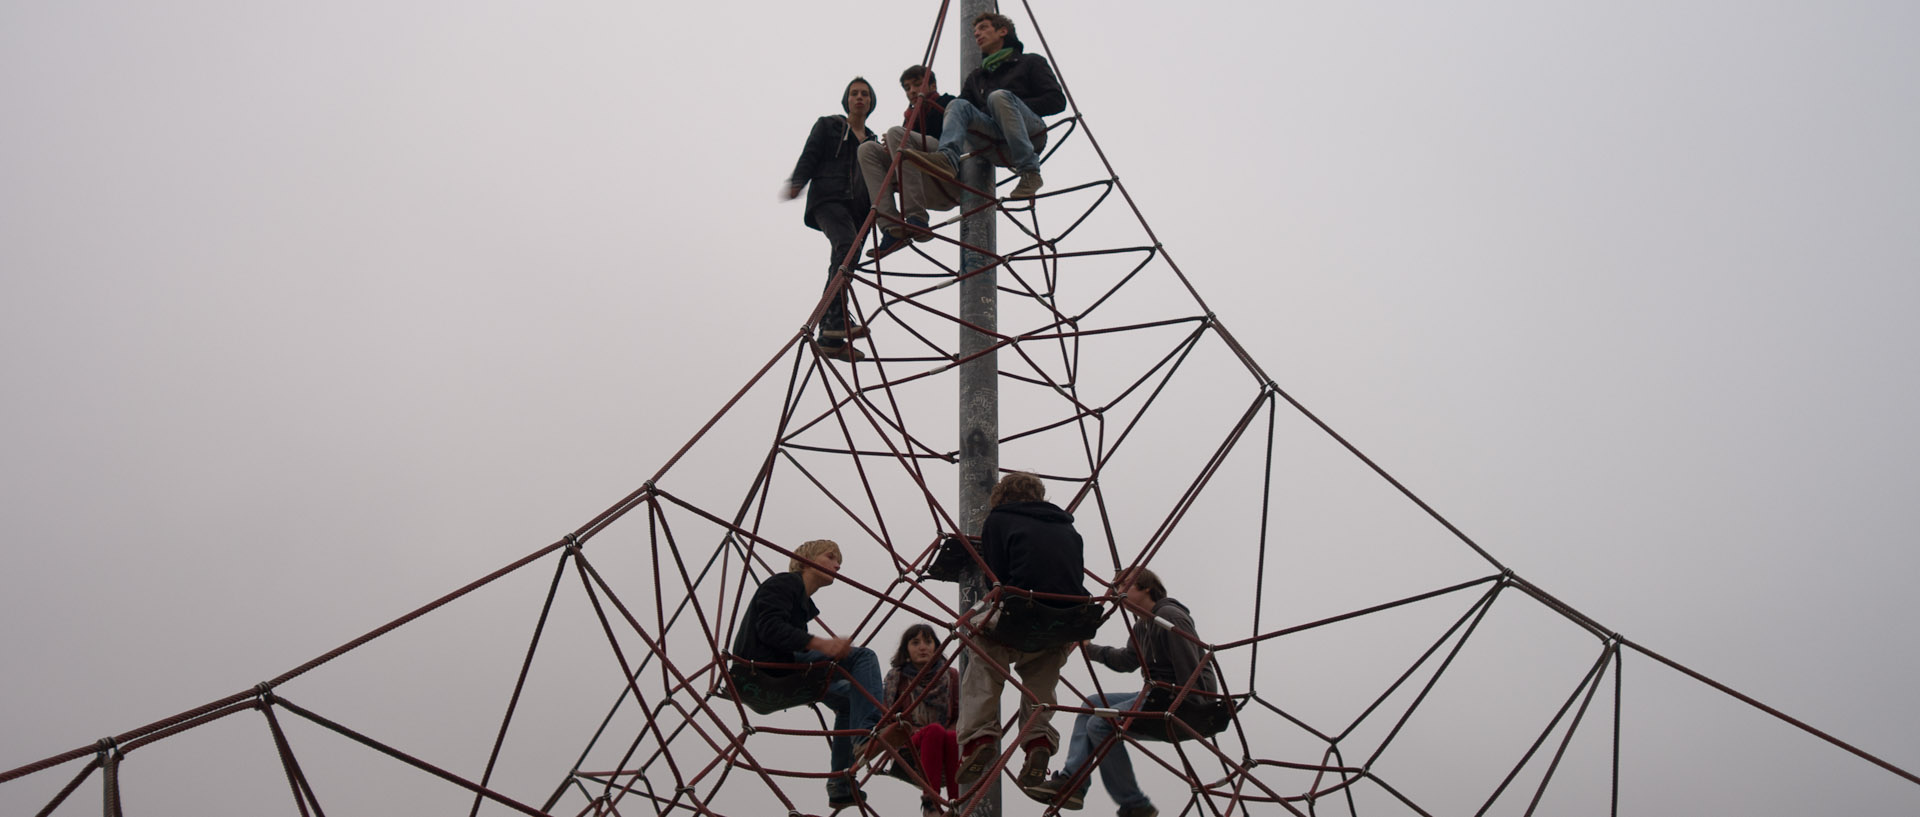 Etudiants dans une "araignée" pour enfants, parc Henri-Matisse, à Lille.